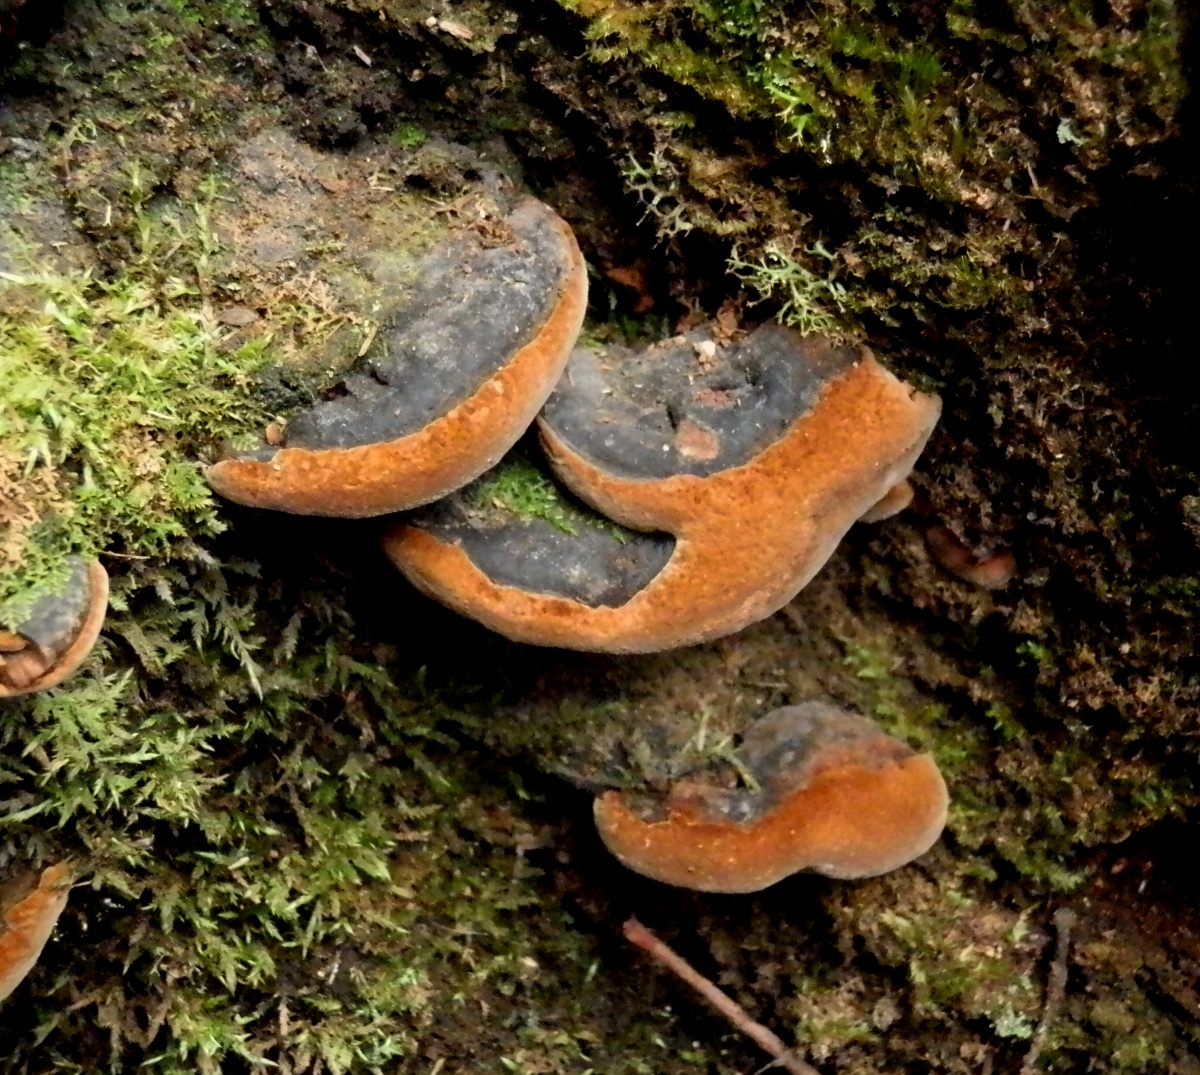 Phellinus fungus